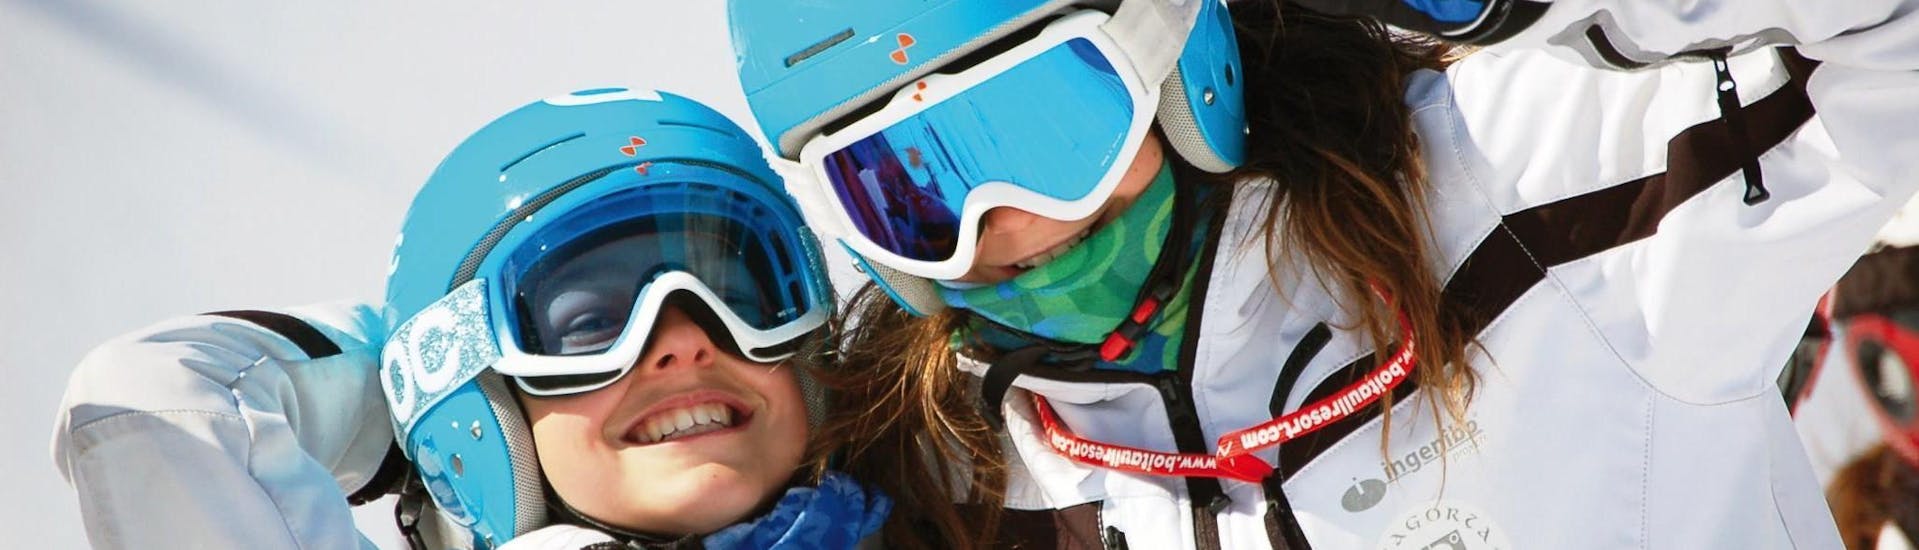 Cours de ski Enfants (4-16 ans) pour Tous niveaux.